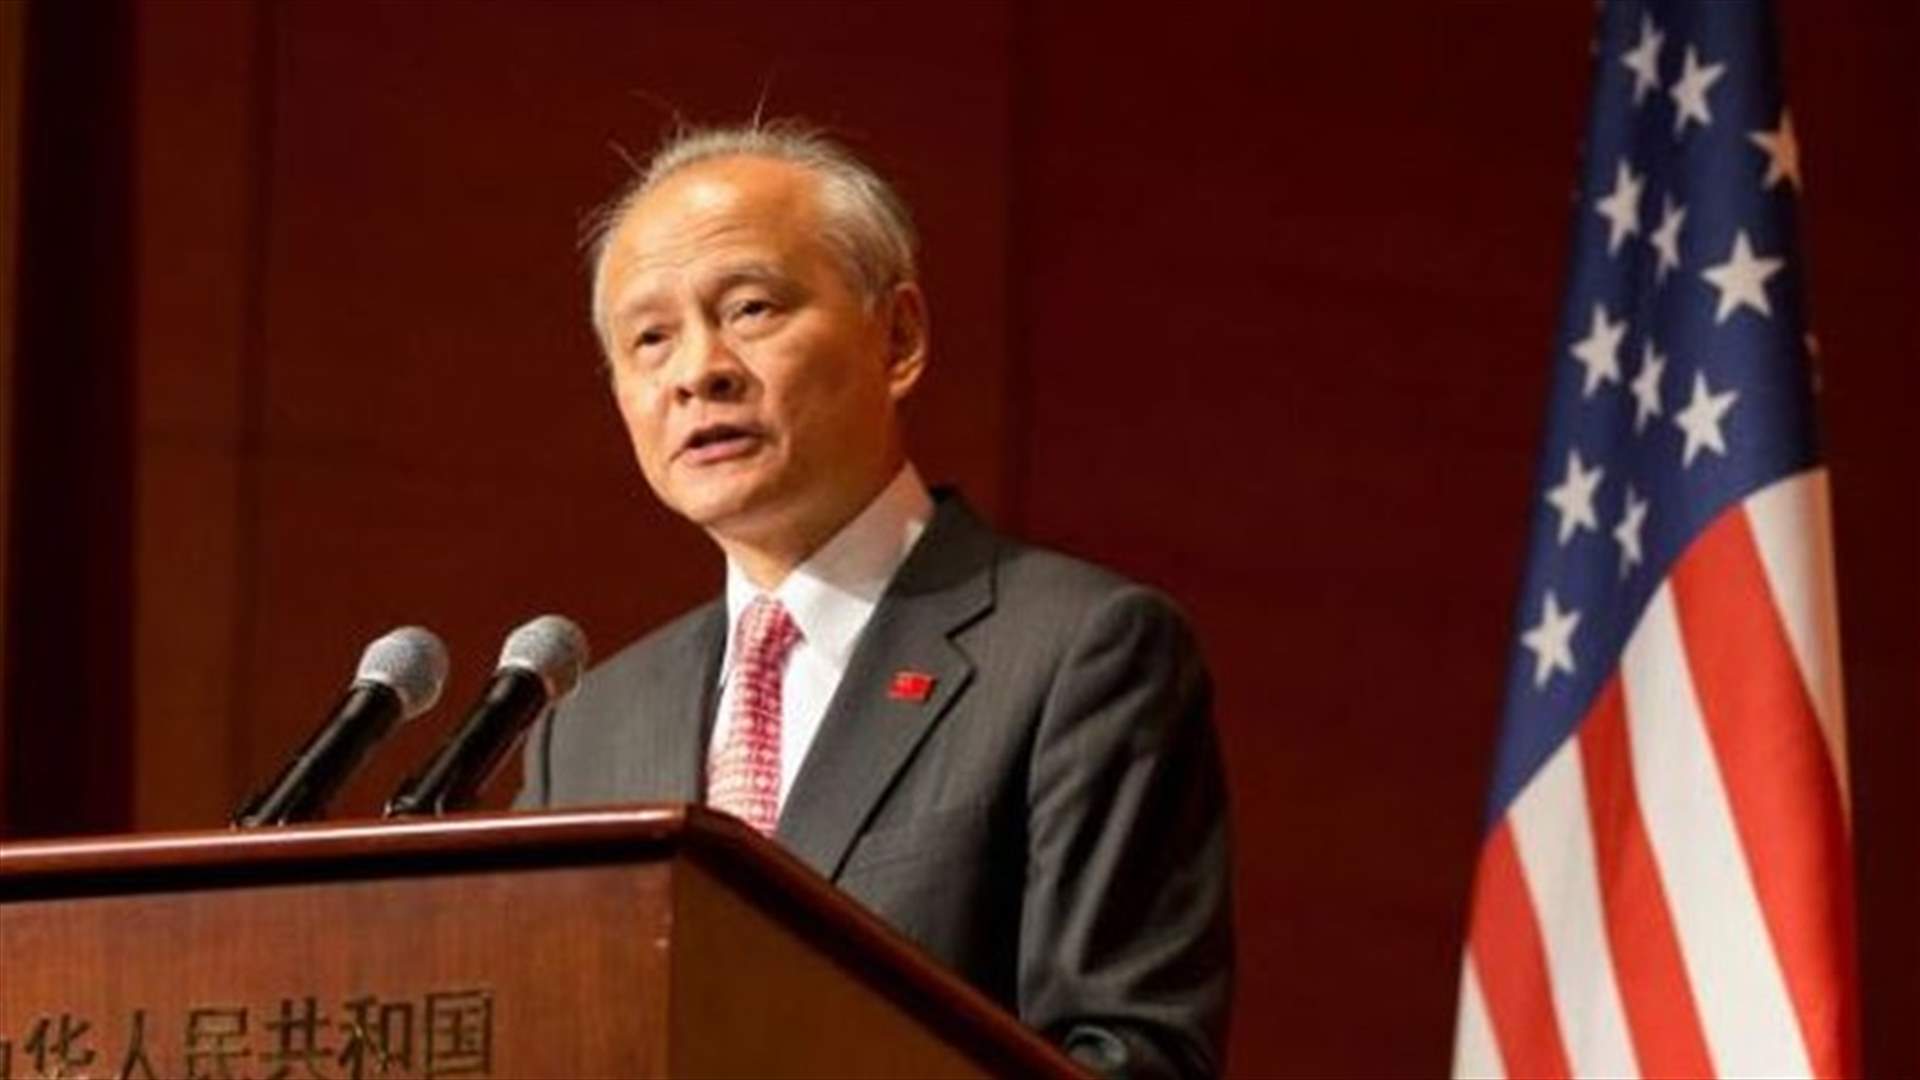 السفير الصيني: واشنطن أفشلت اتفاقات كان من شأنها إنهاء النزاع التجاري